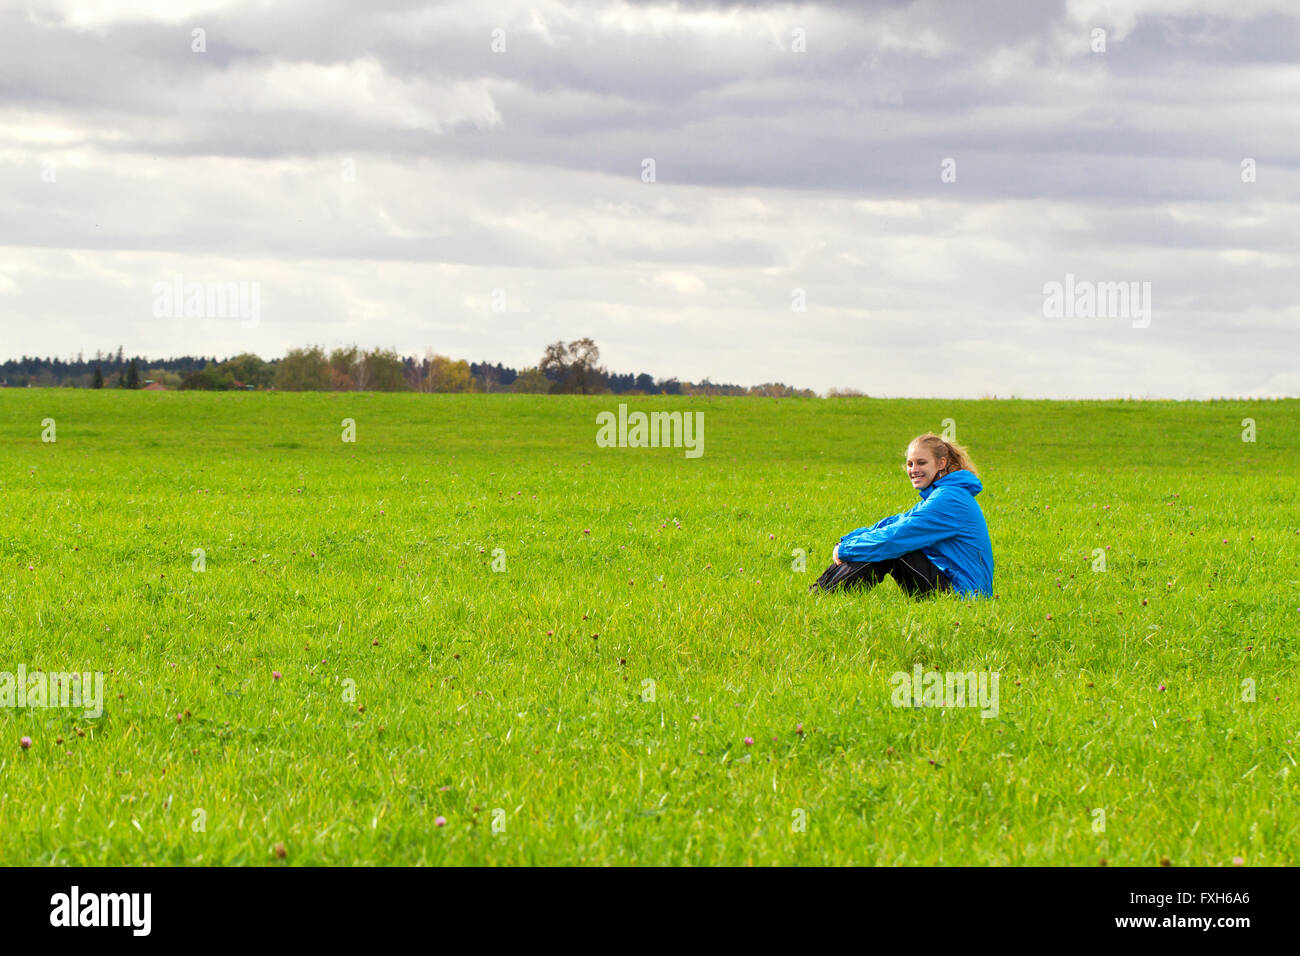 Glücklich, sportliche Frau sitzt auf einer grünen Wiese Stockfoto